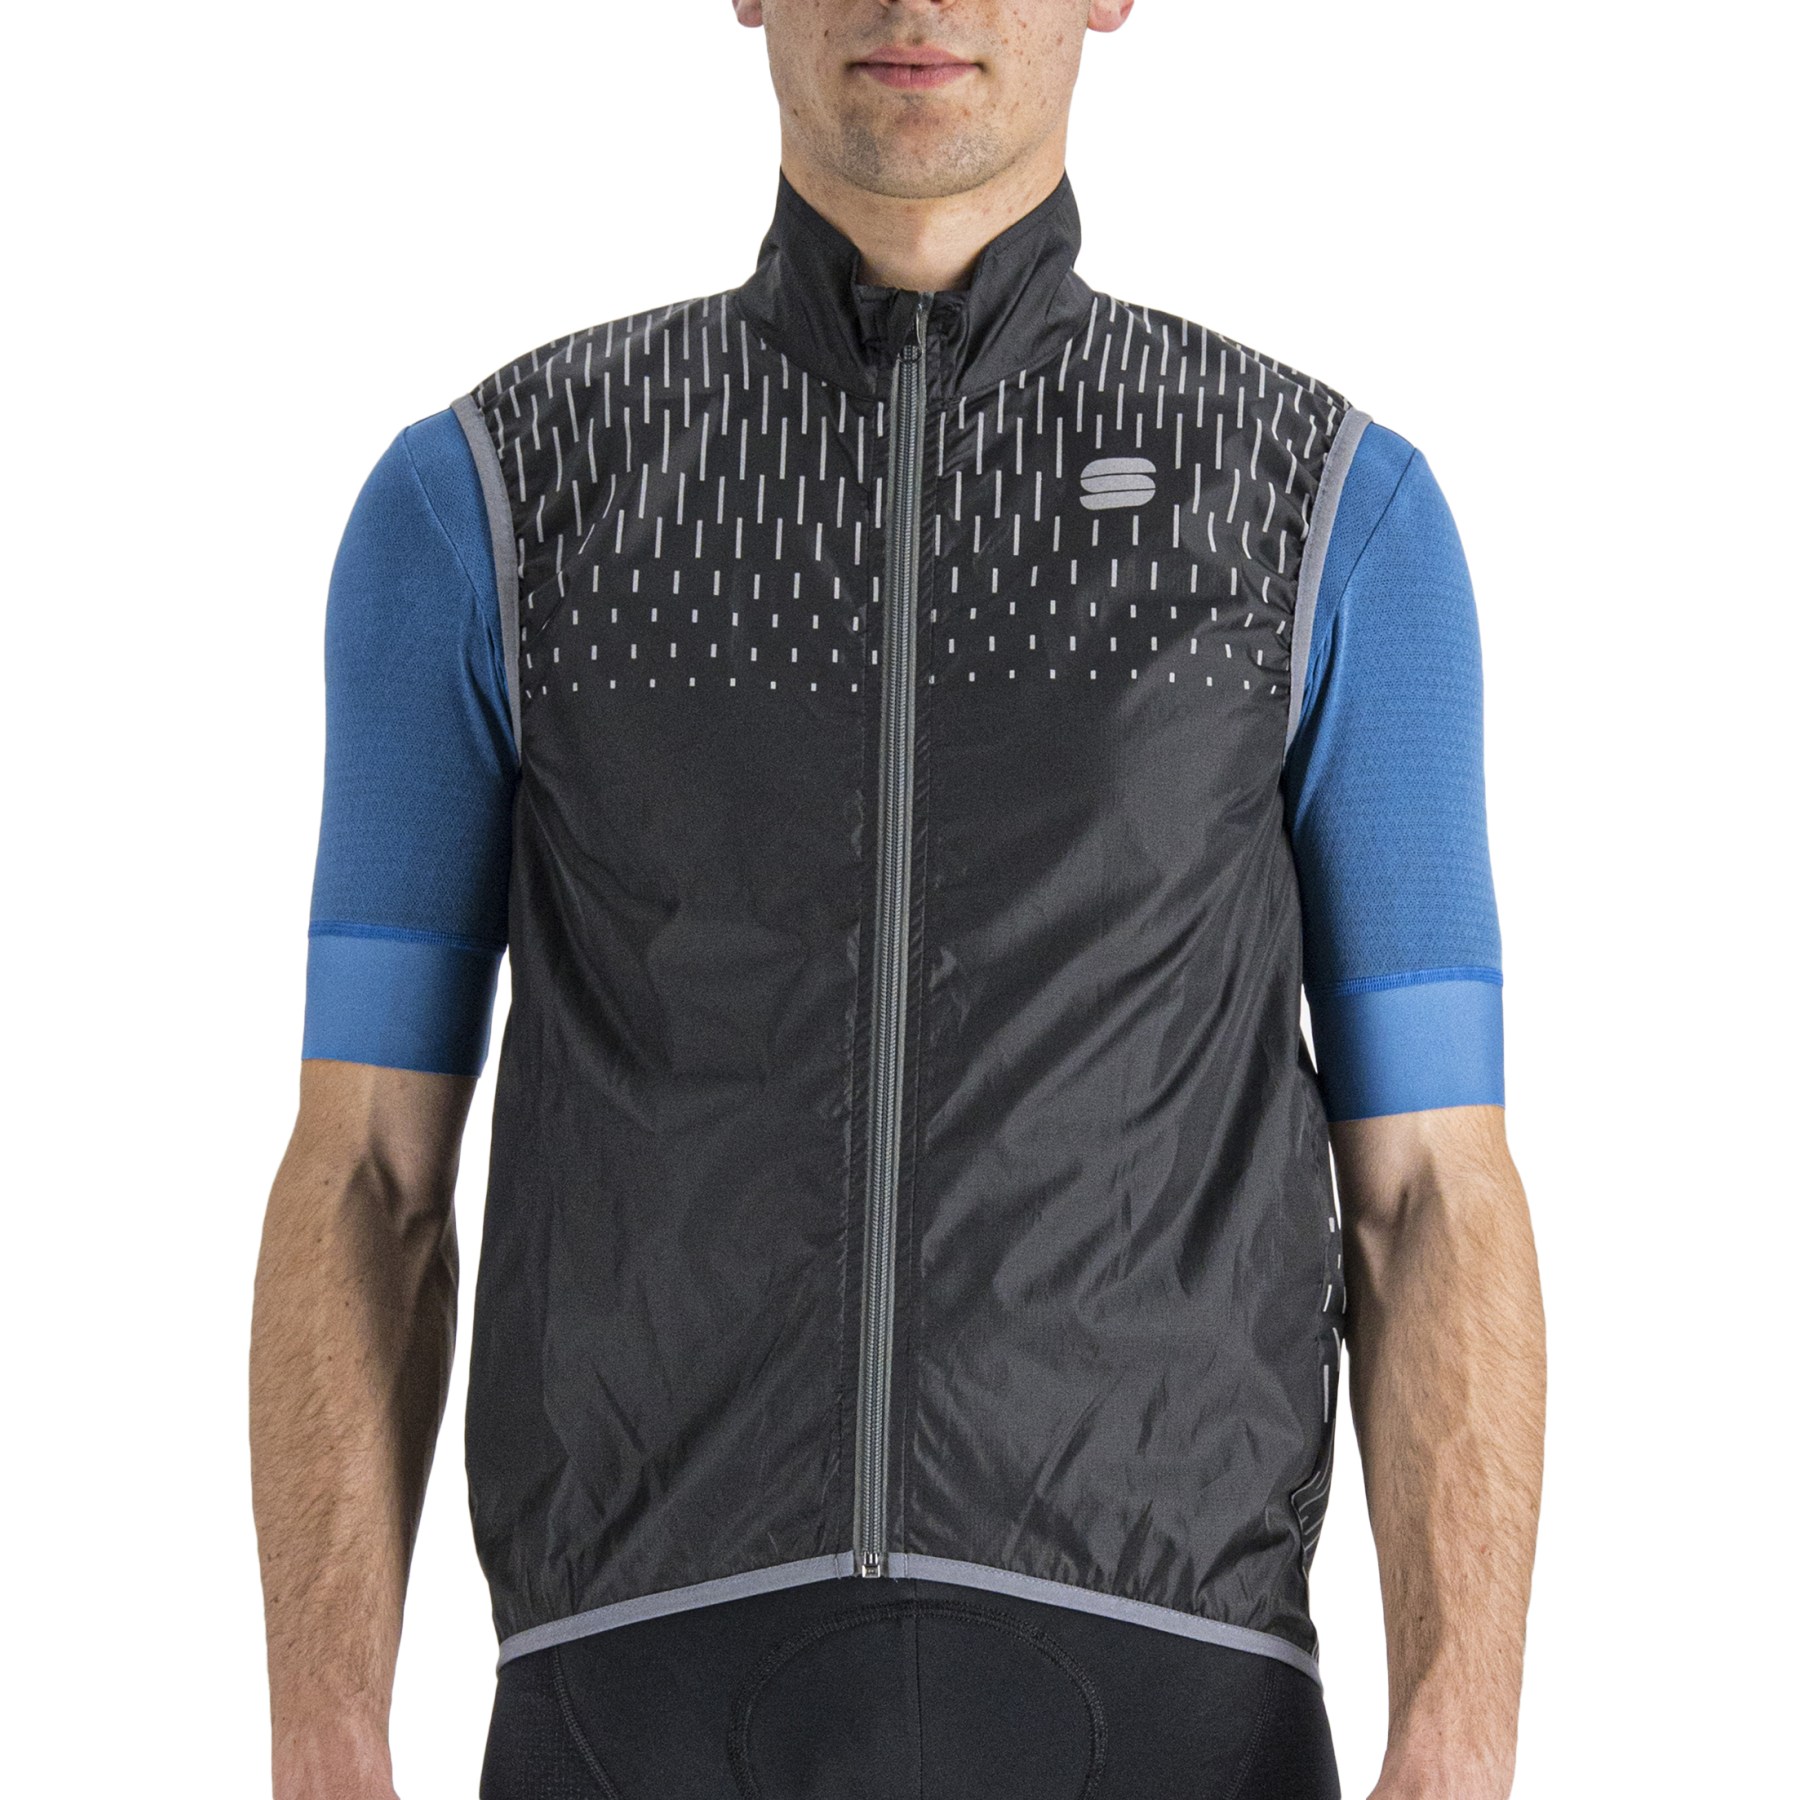 Productfoto van Sportful Reflex Vest Heren - 002 Zwart